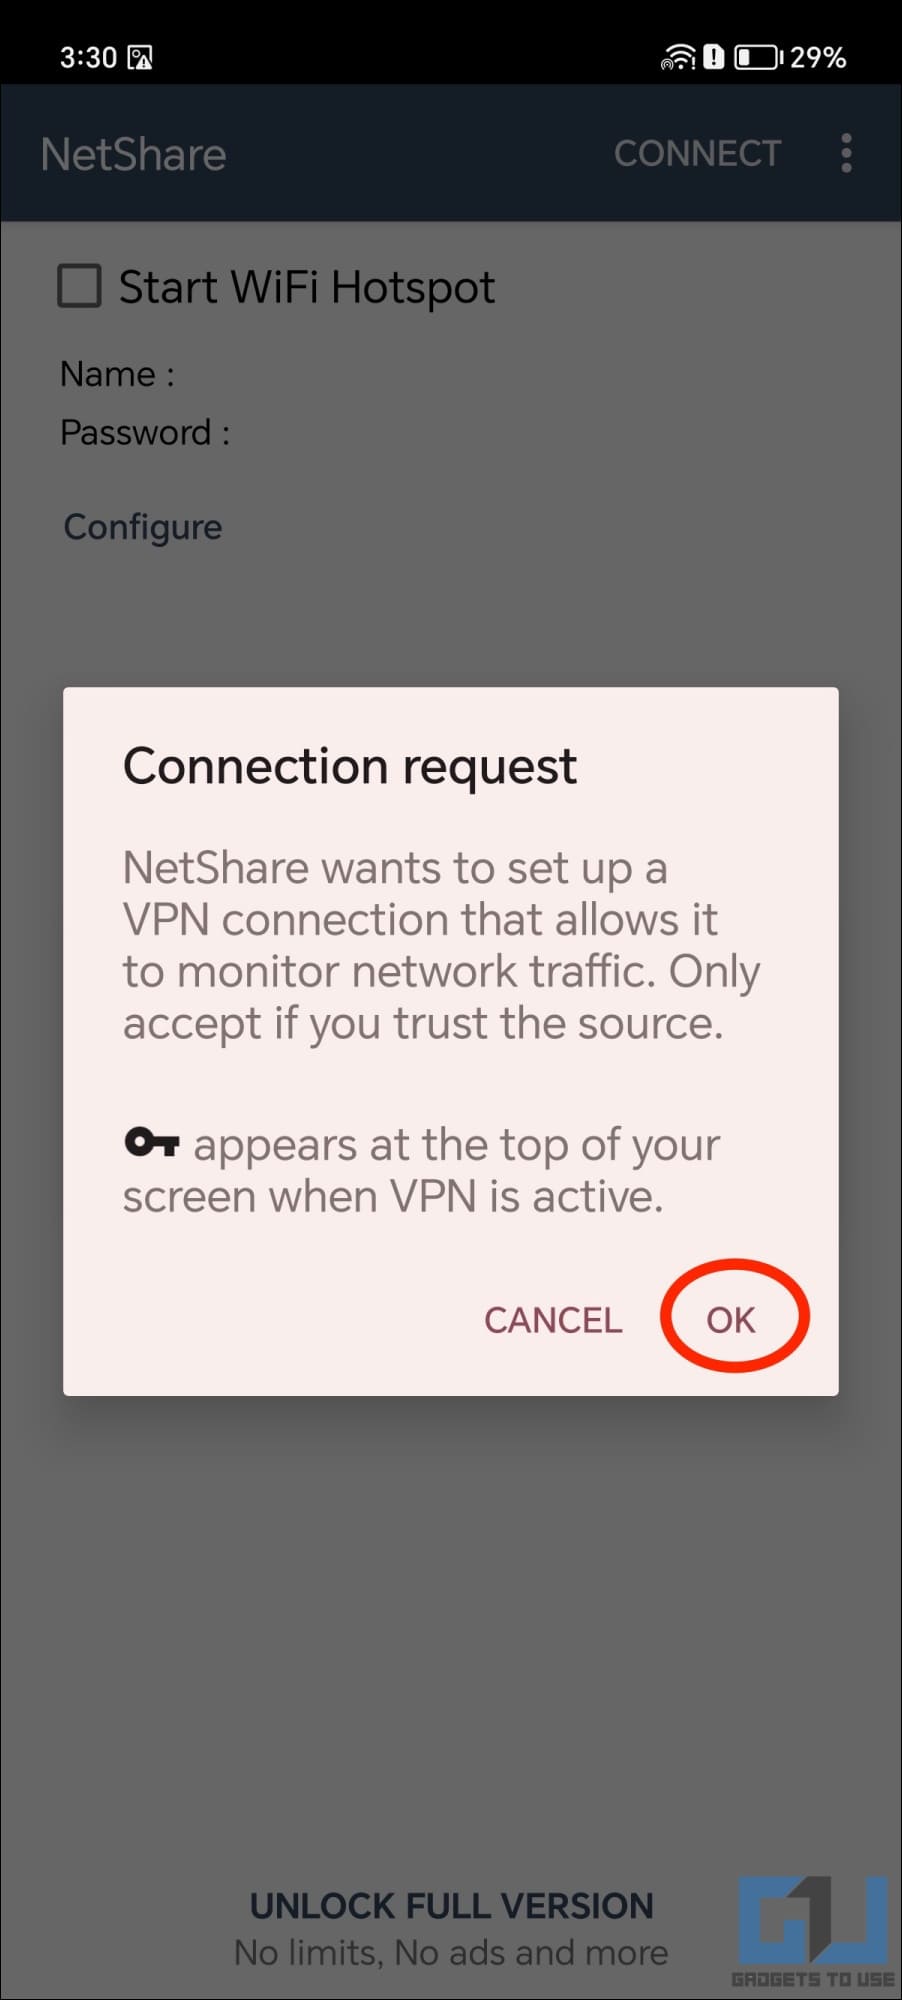 Allow VPN Connection Request